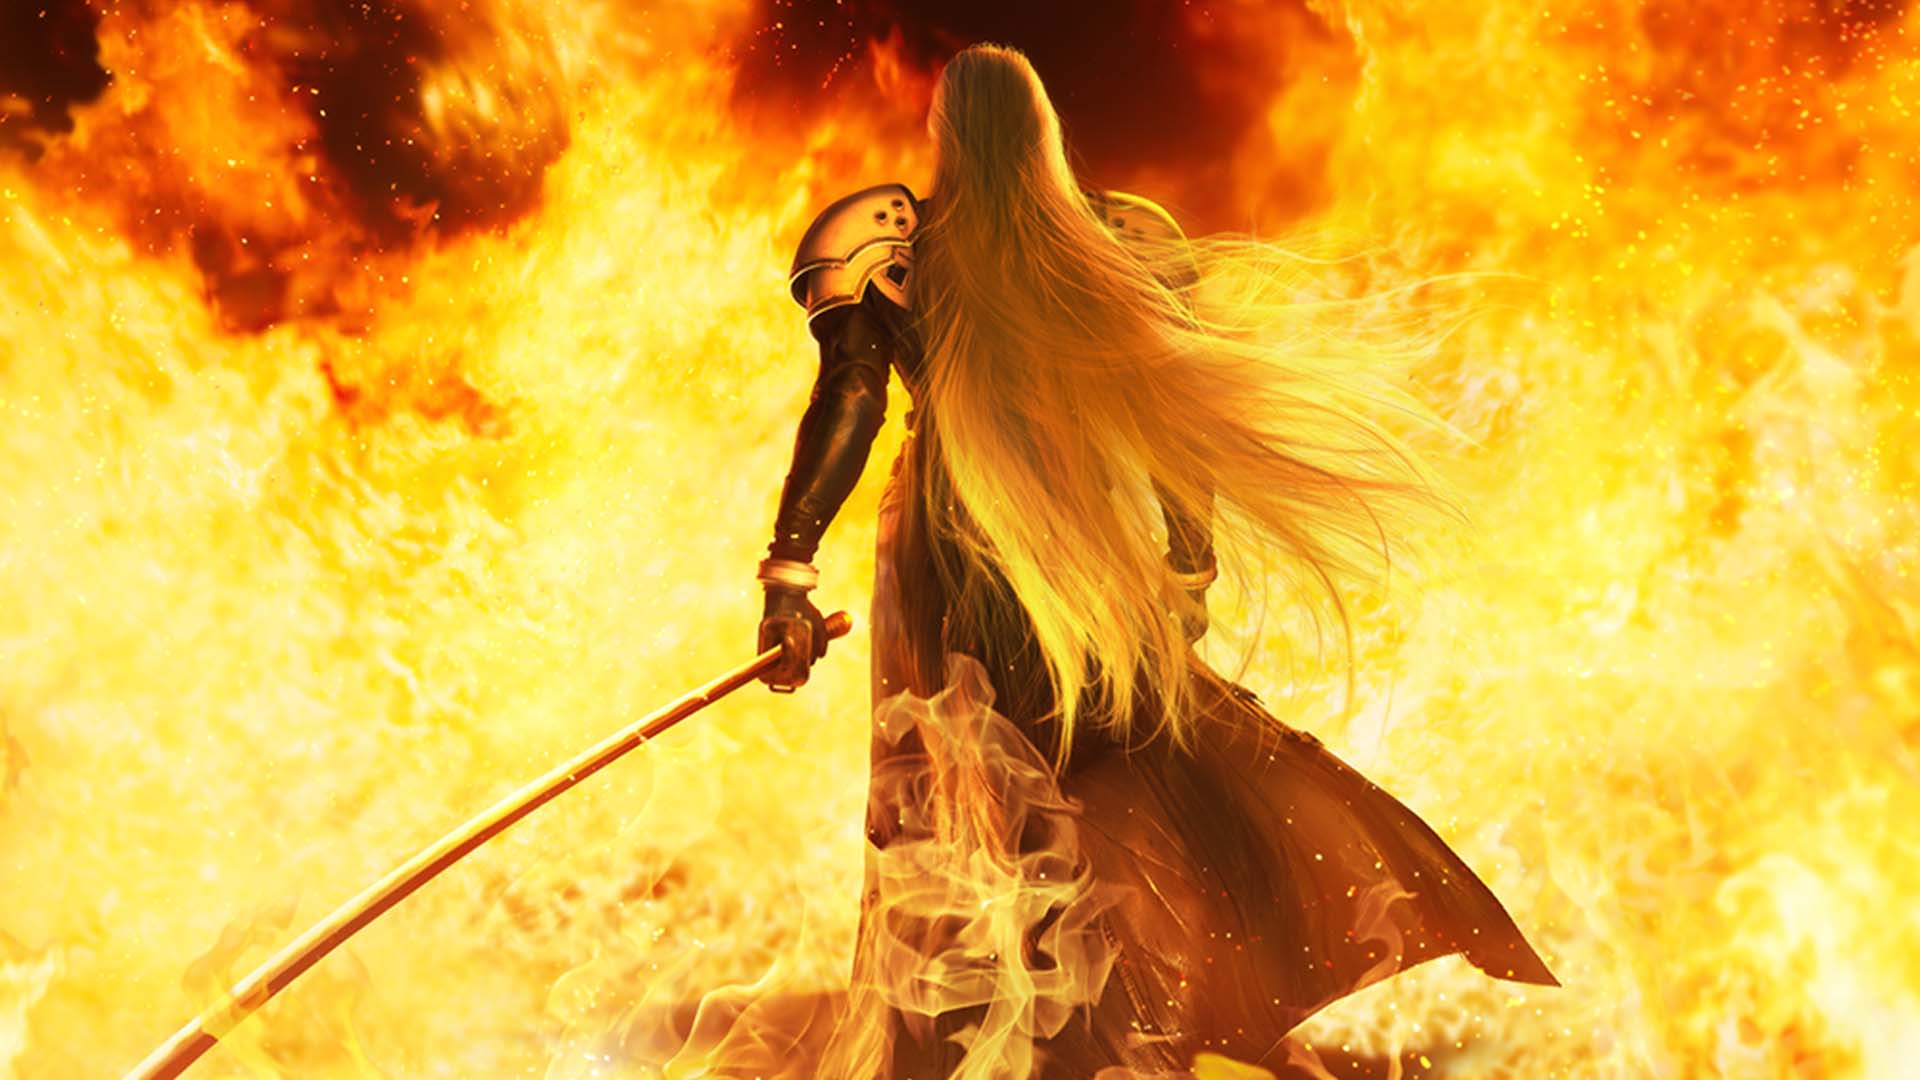 Sephiroth among flames